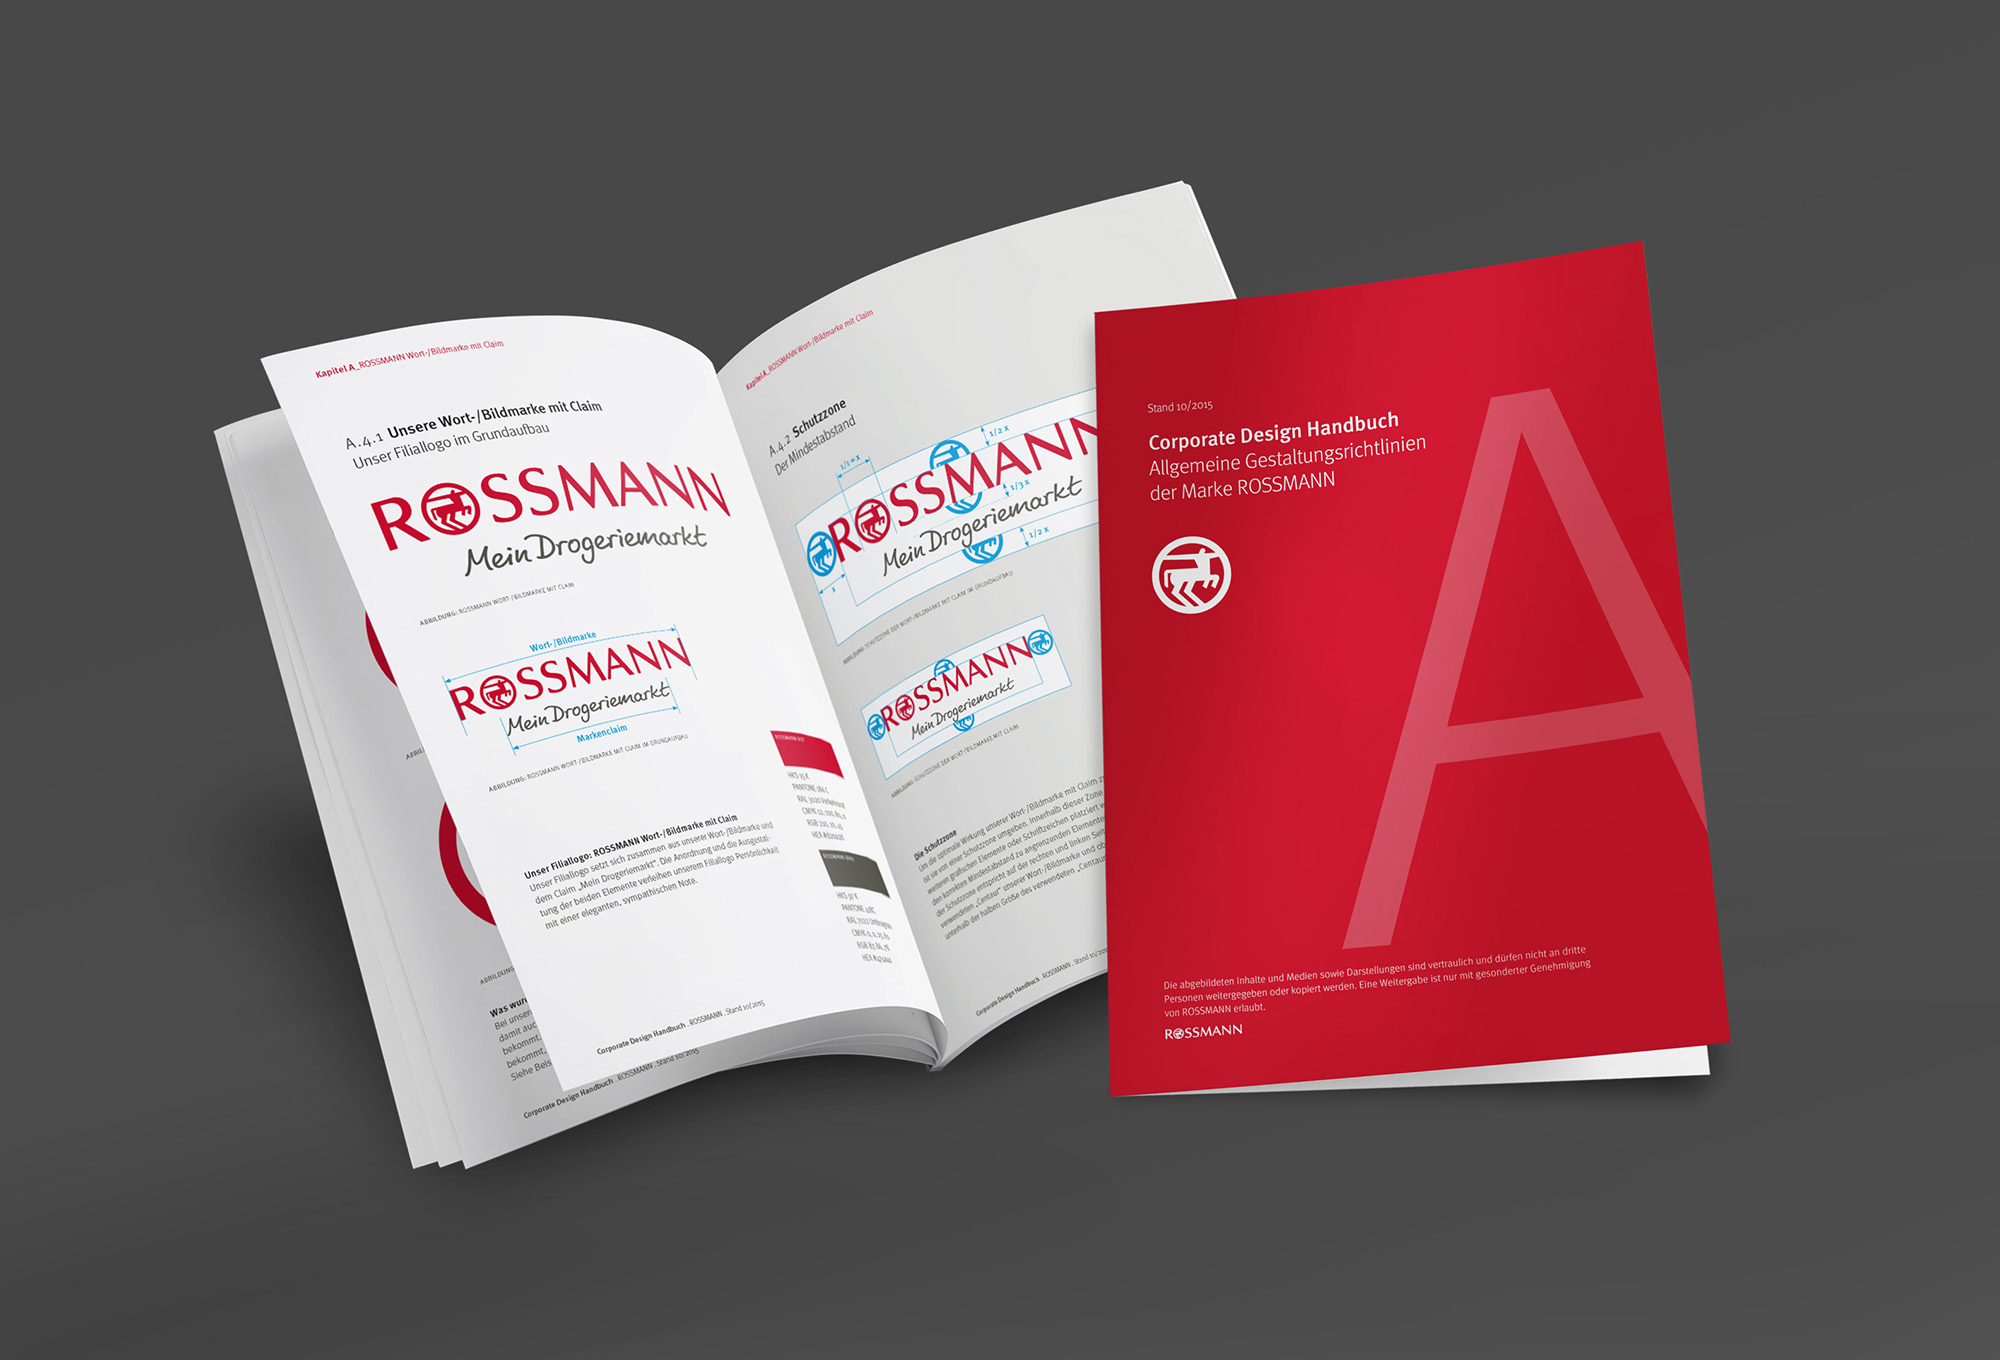 rossmann_corporate_design_handbuch